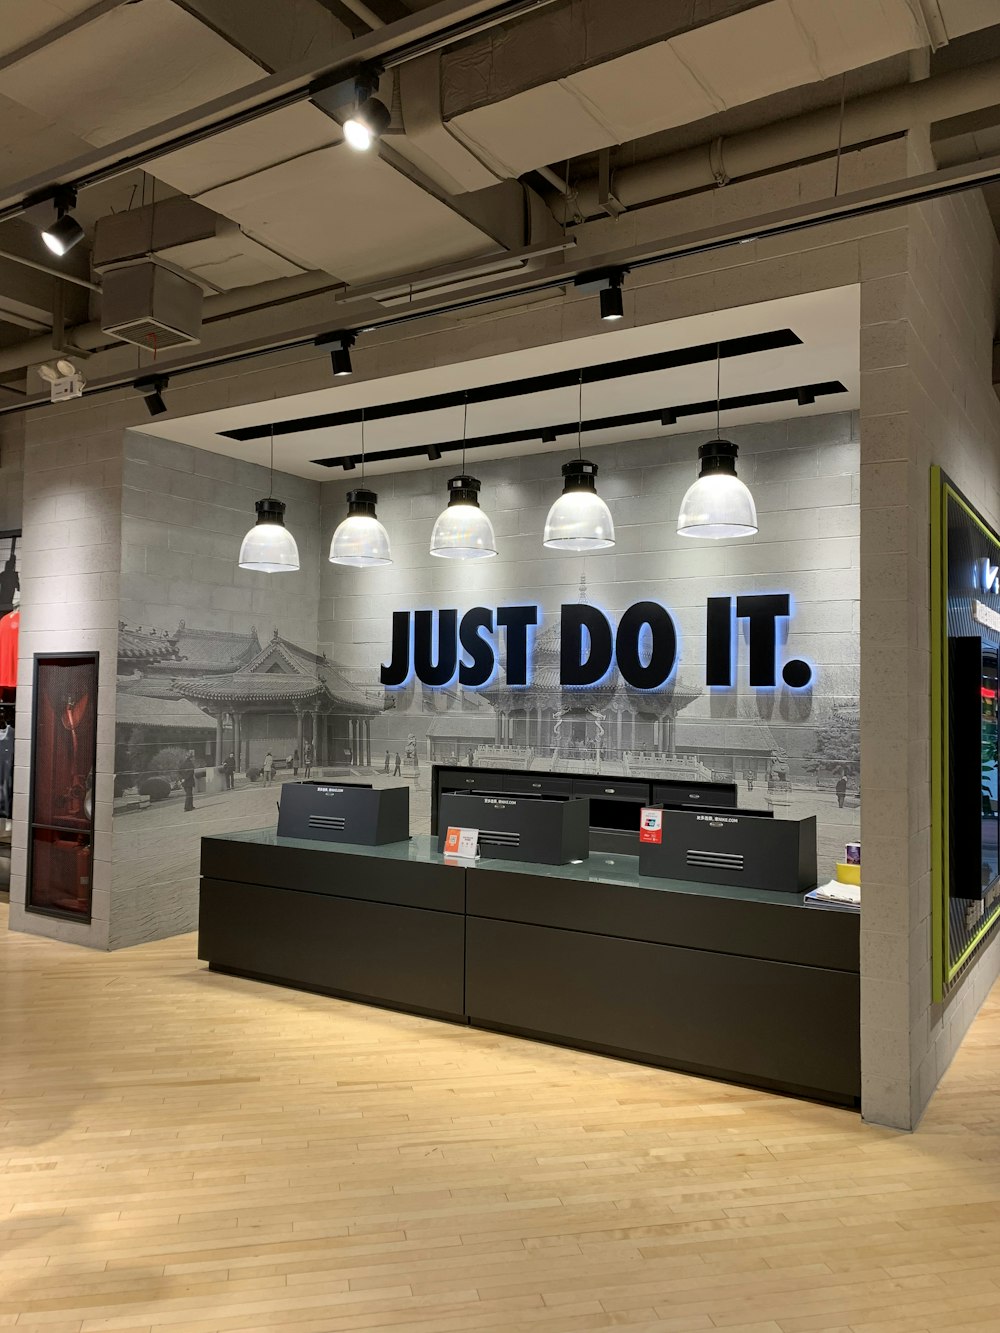 Nike store with Just Do It. signage photo – Free Image on Unsplash